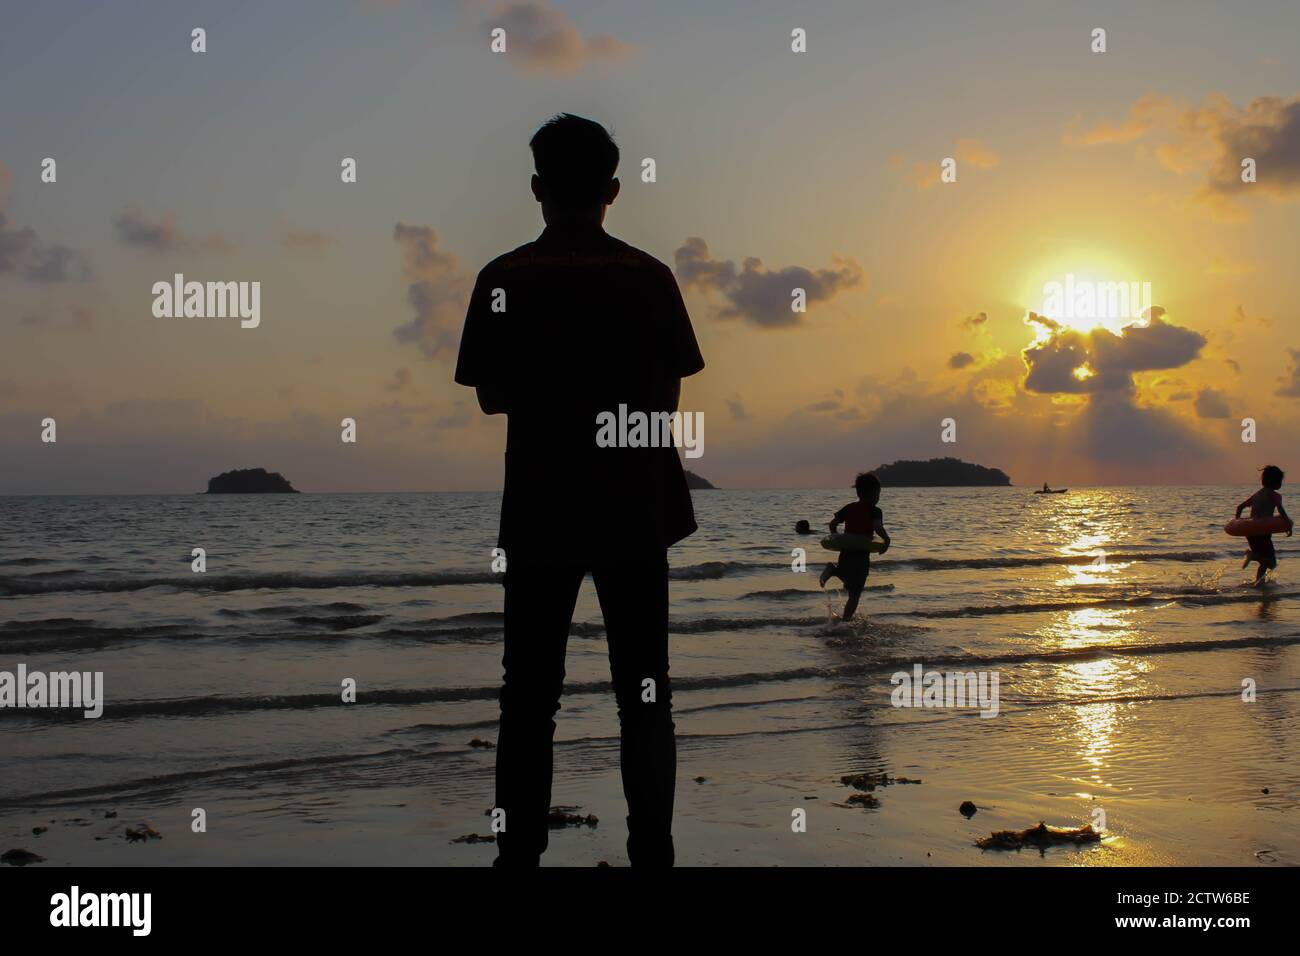 L'uomo solitario si erge sulla spiaggia guarda verso la luce del sole, scalini sulla sabbia, tramonto, silhouette di persona che cammina sulla spiaggia di mare. Foto Stock